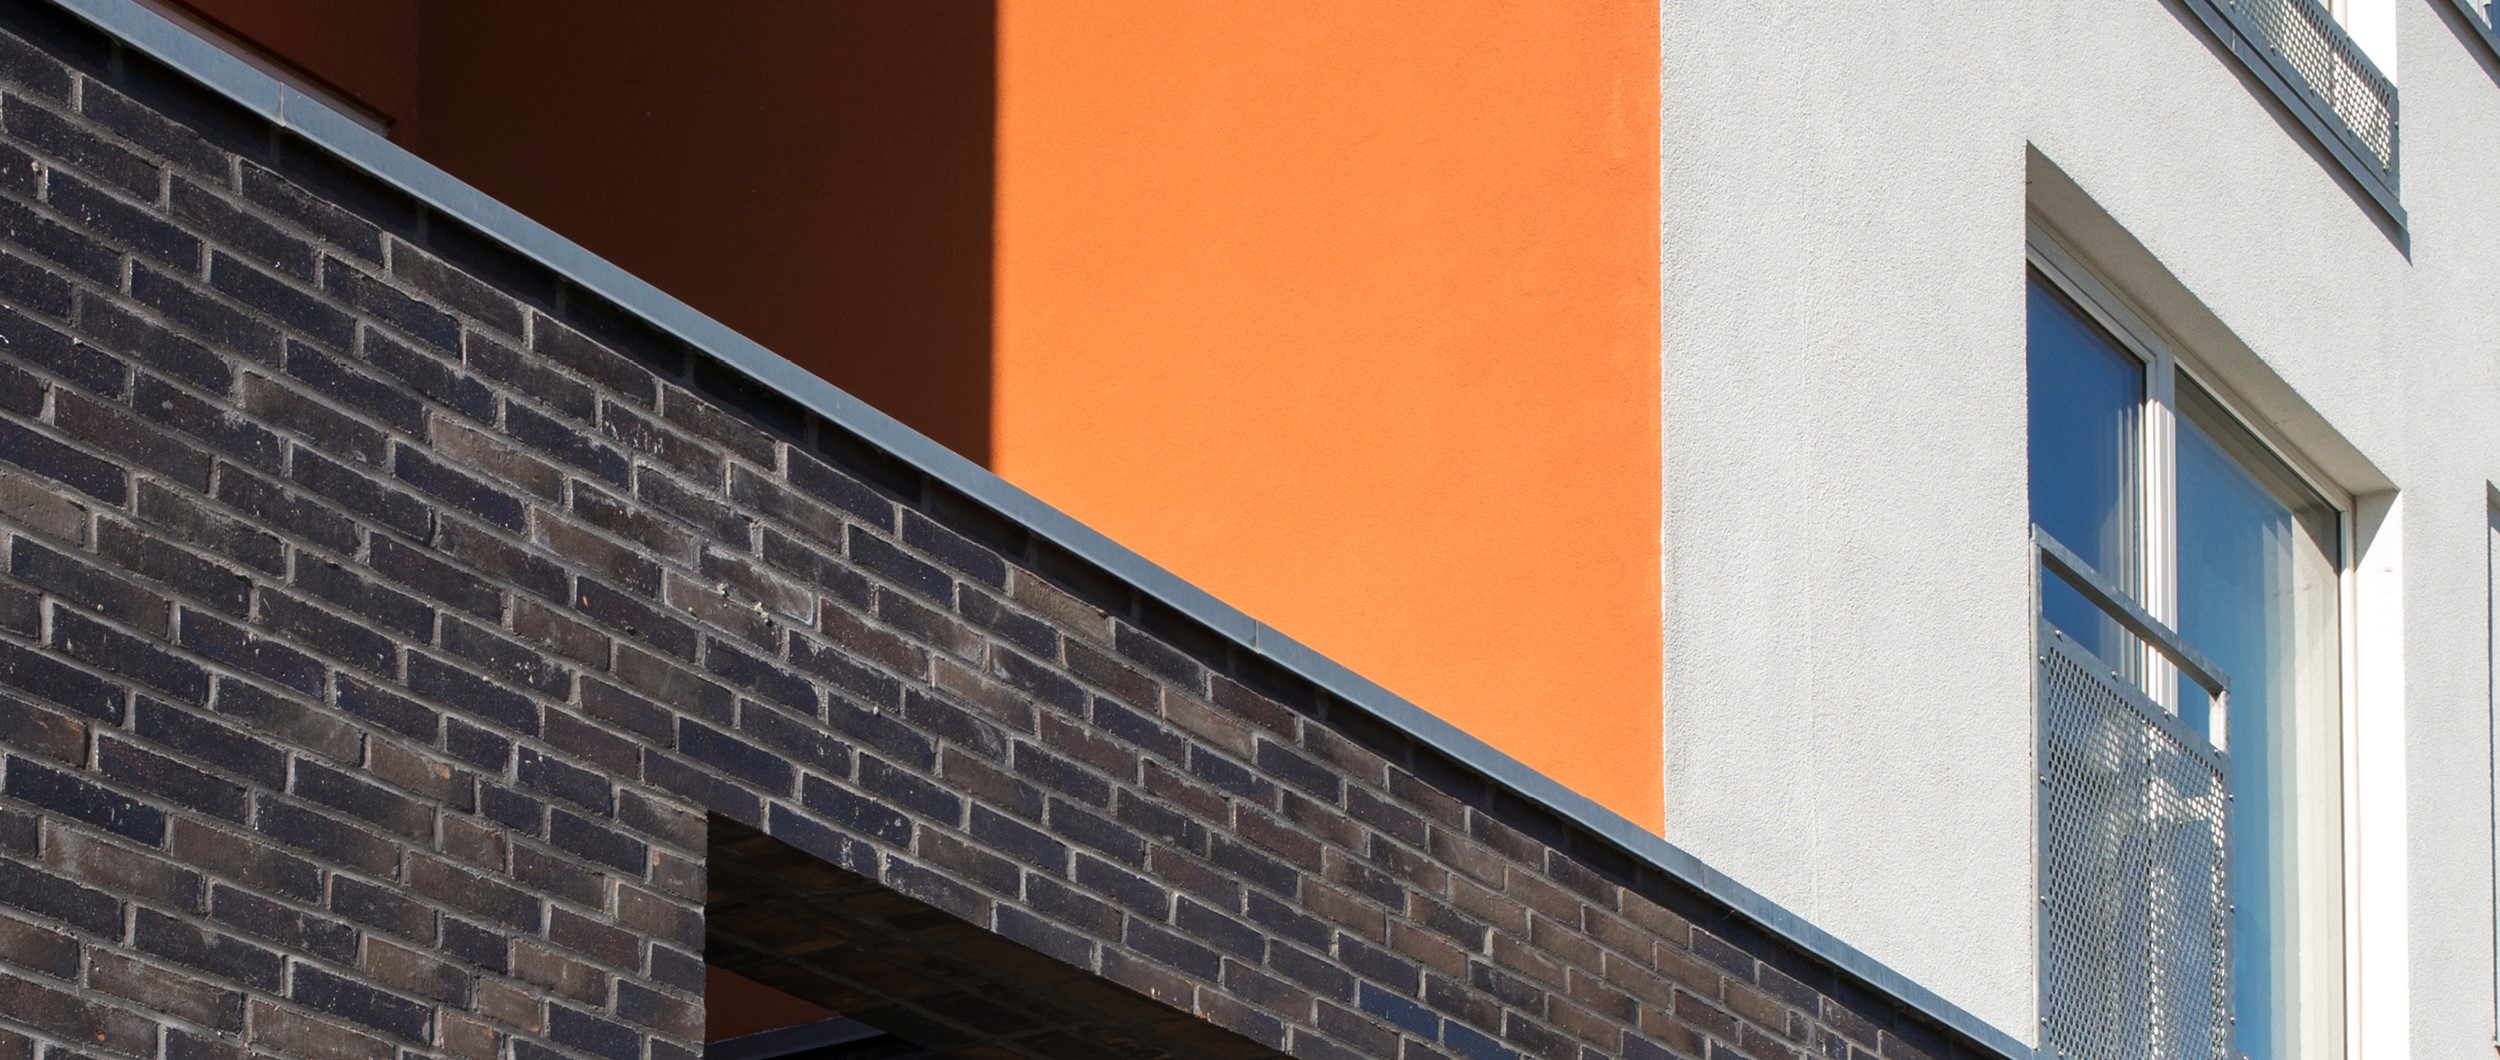 Basen er udført med mørkbrændte teglsten som en reference til havnens lavere huse, mens de øvrige facader fremstår med pudsede flader i hvid og en varm orange farve.